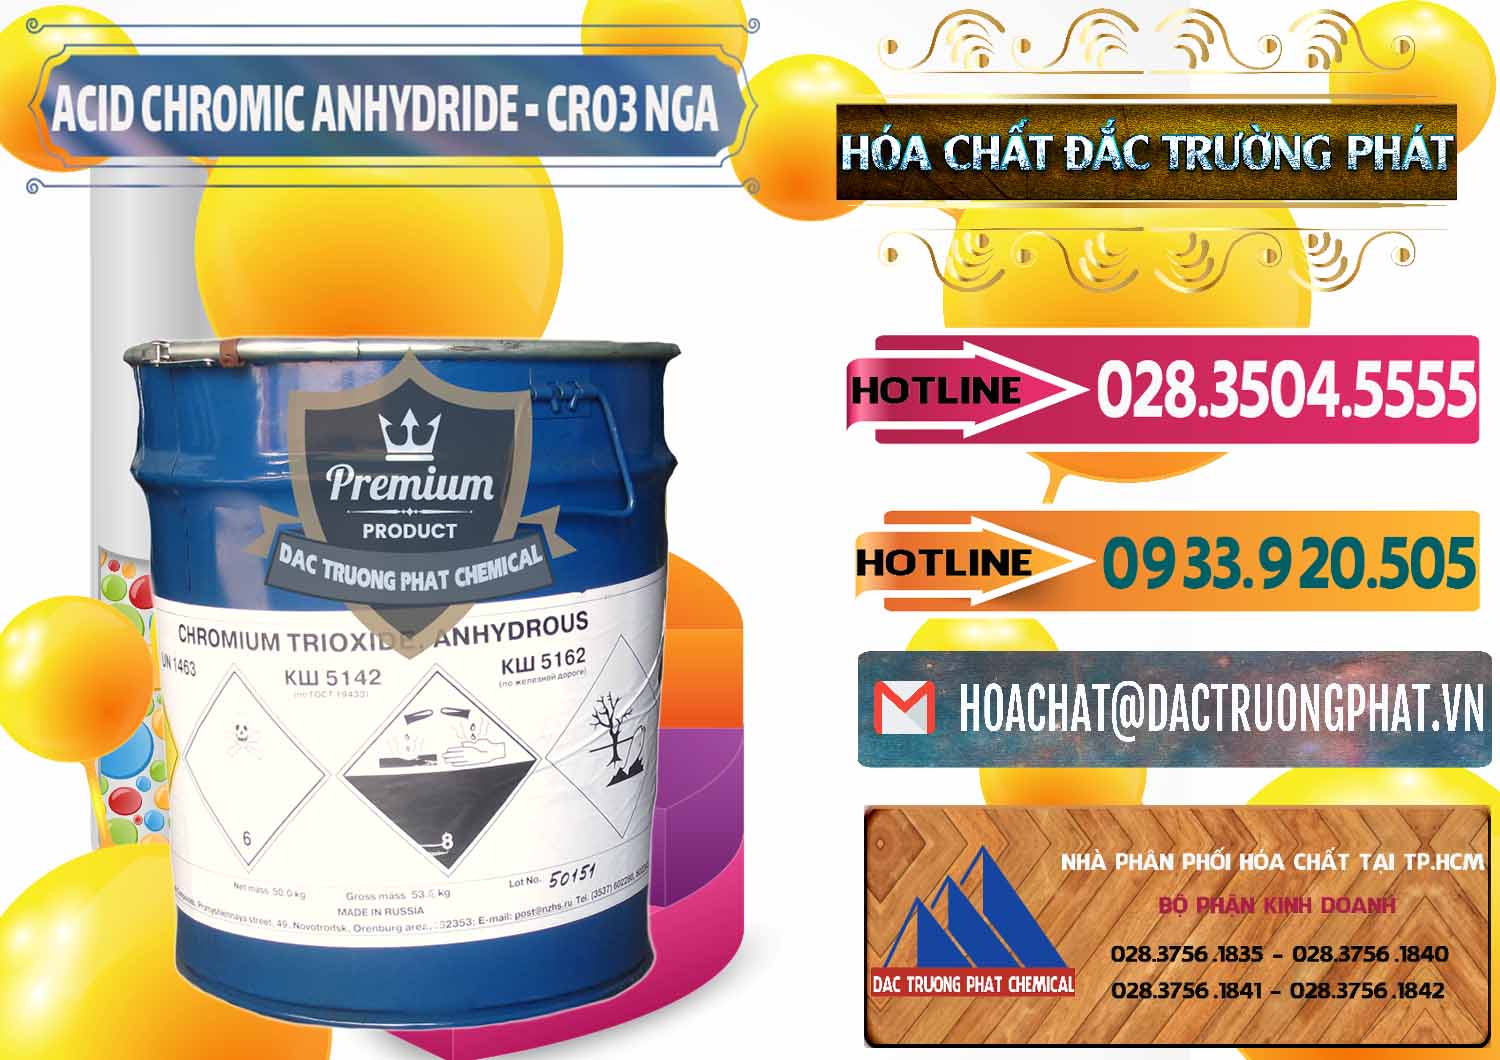 Đơn vị chuyên bán & cung cấp Acid Chromic Anhydride - Cromic CRO3 Nga Russia - 0006 - Cty chuyên bán - cung cấp hóa chất tại TP.HCM - dactruongphat.vn